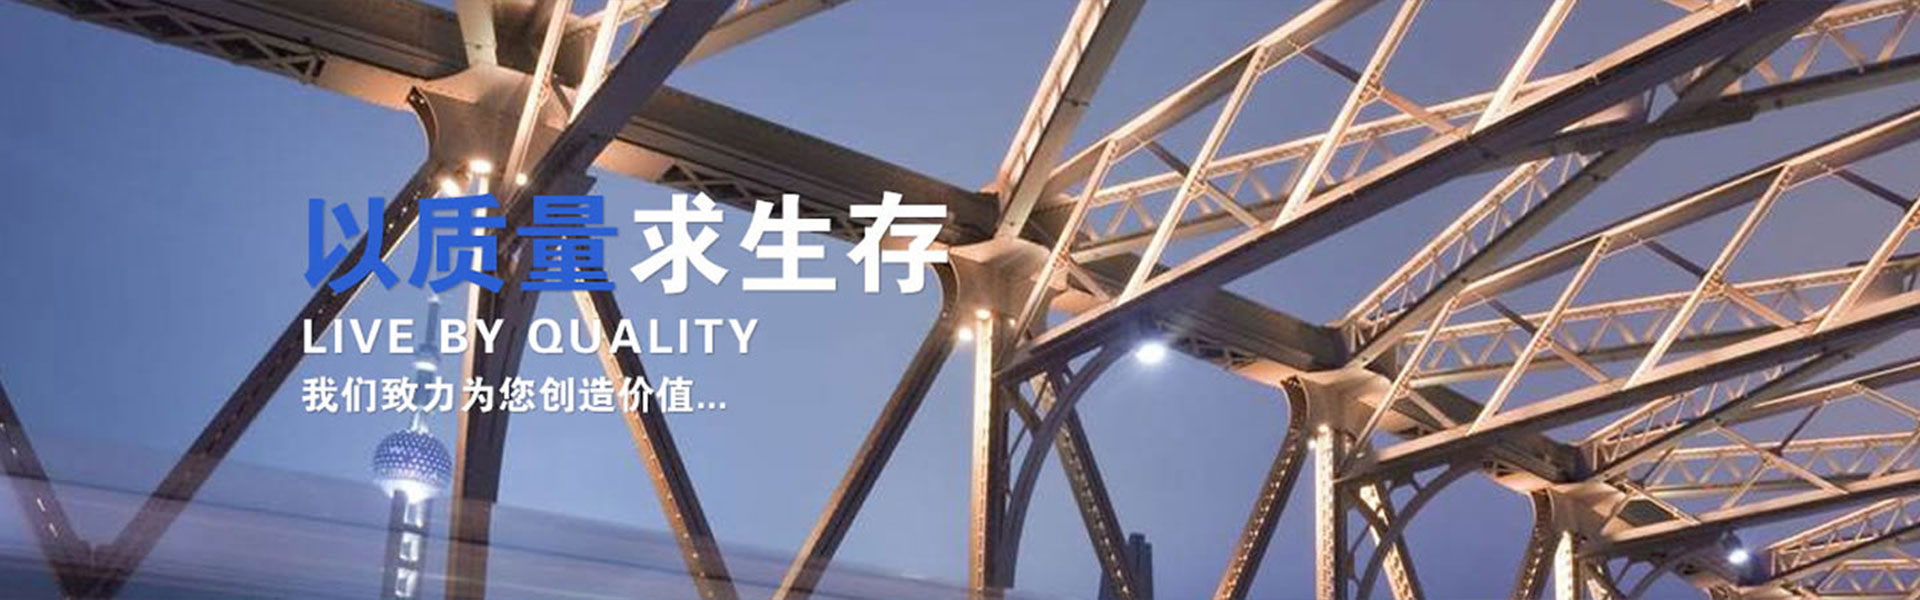 无锡安昌钢结构工程有限公司